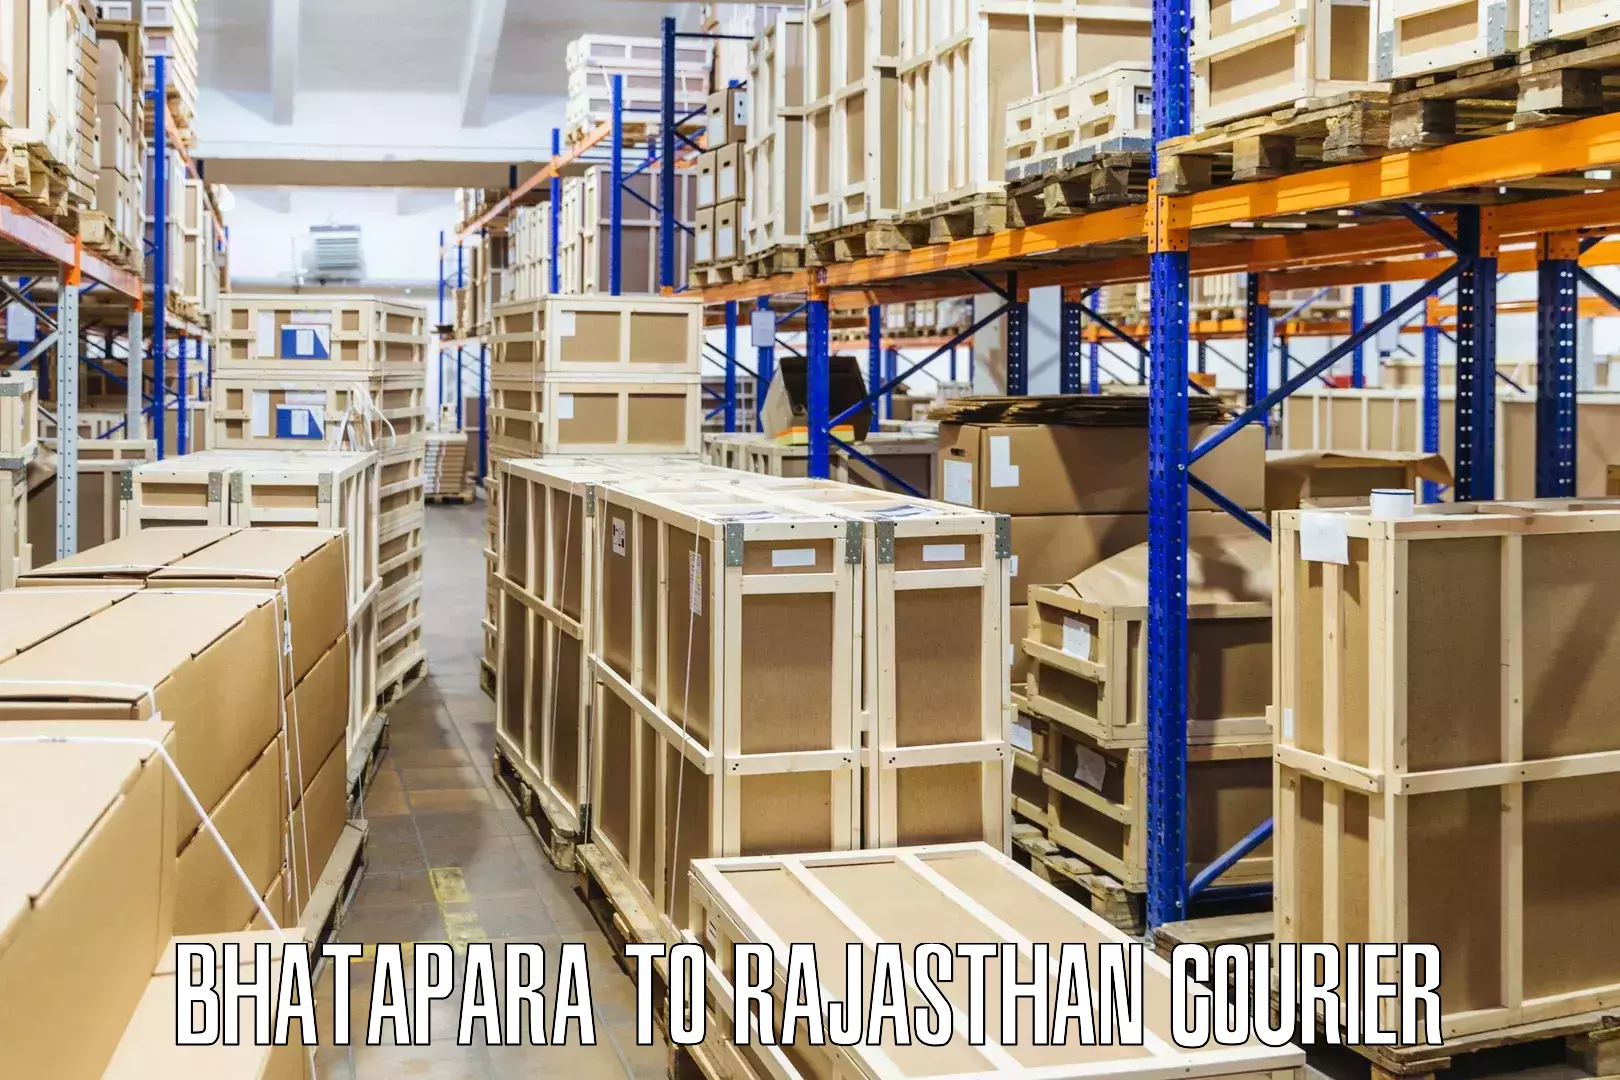 Efficient cargo services Bhatapara to Nainwa